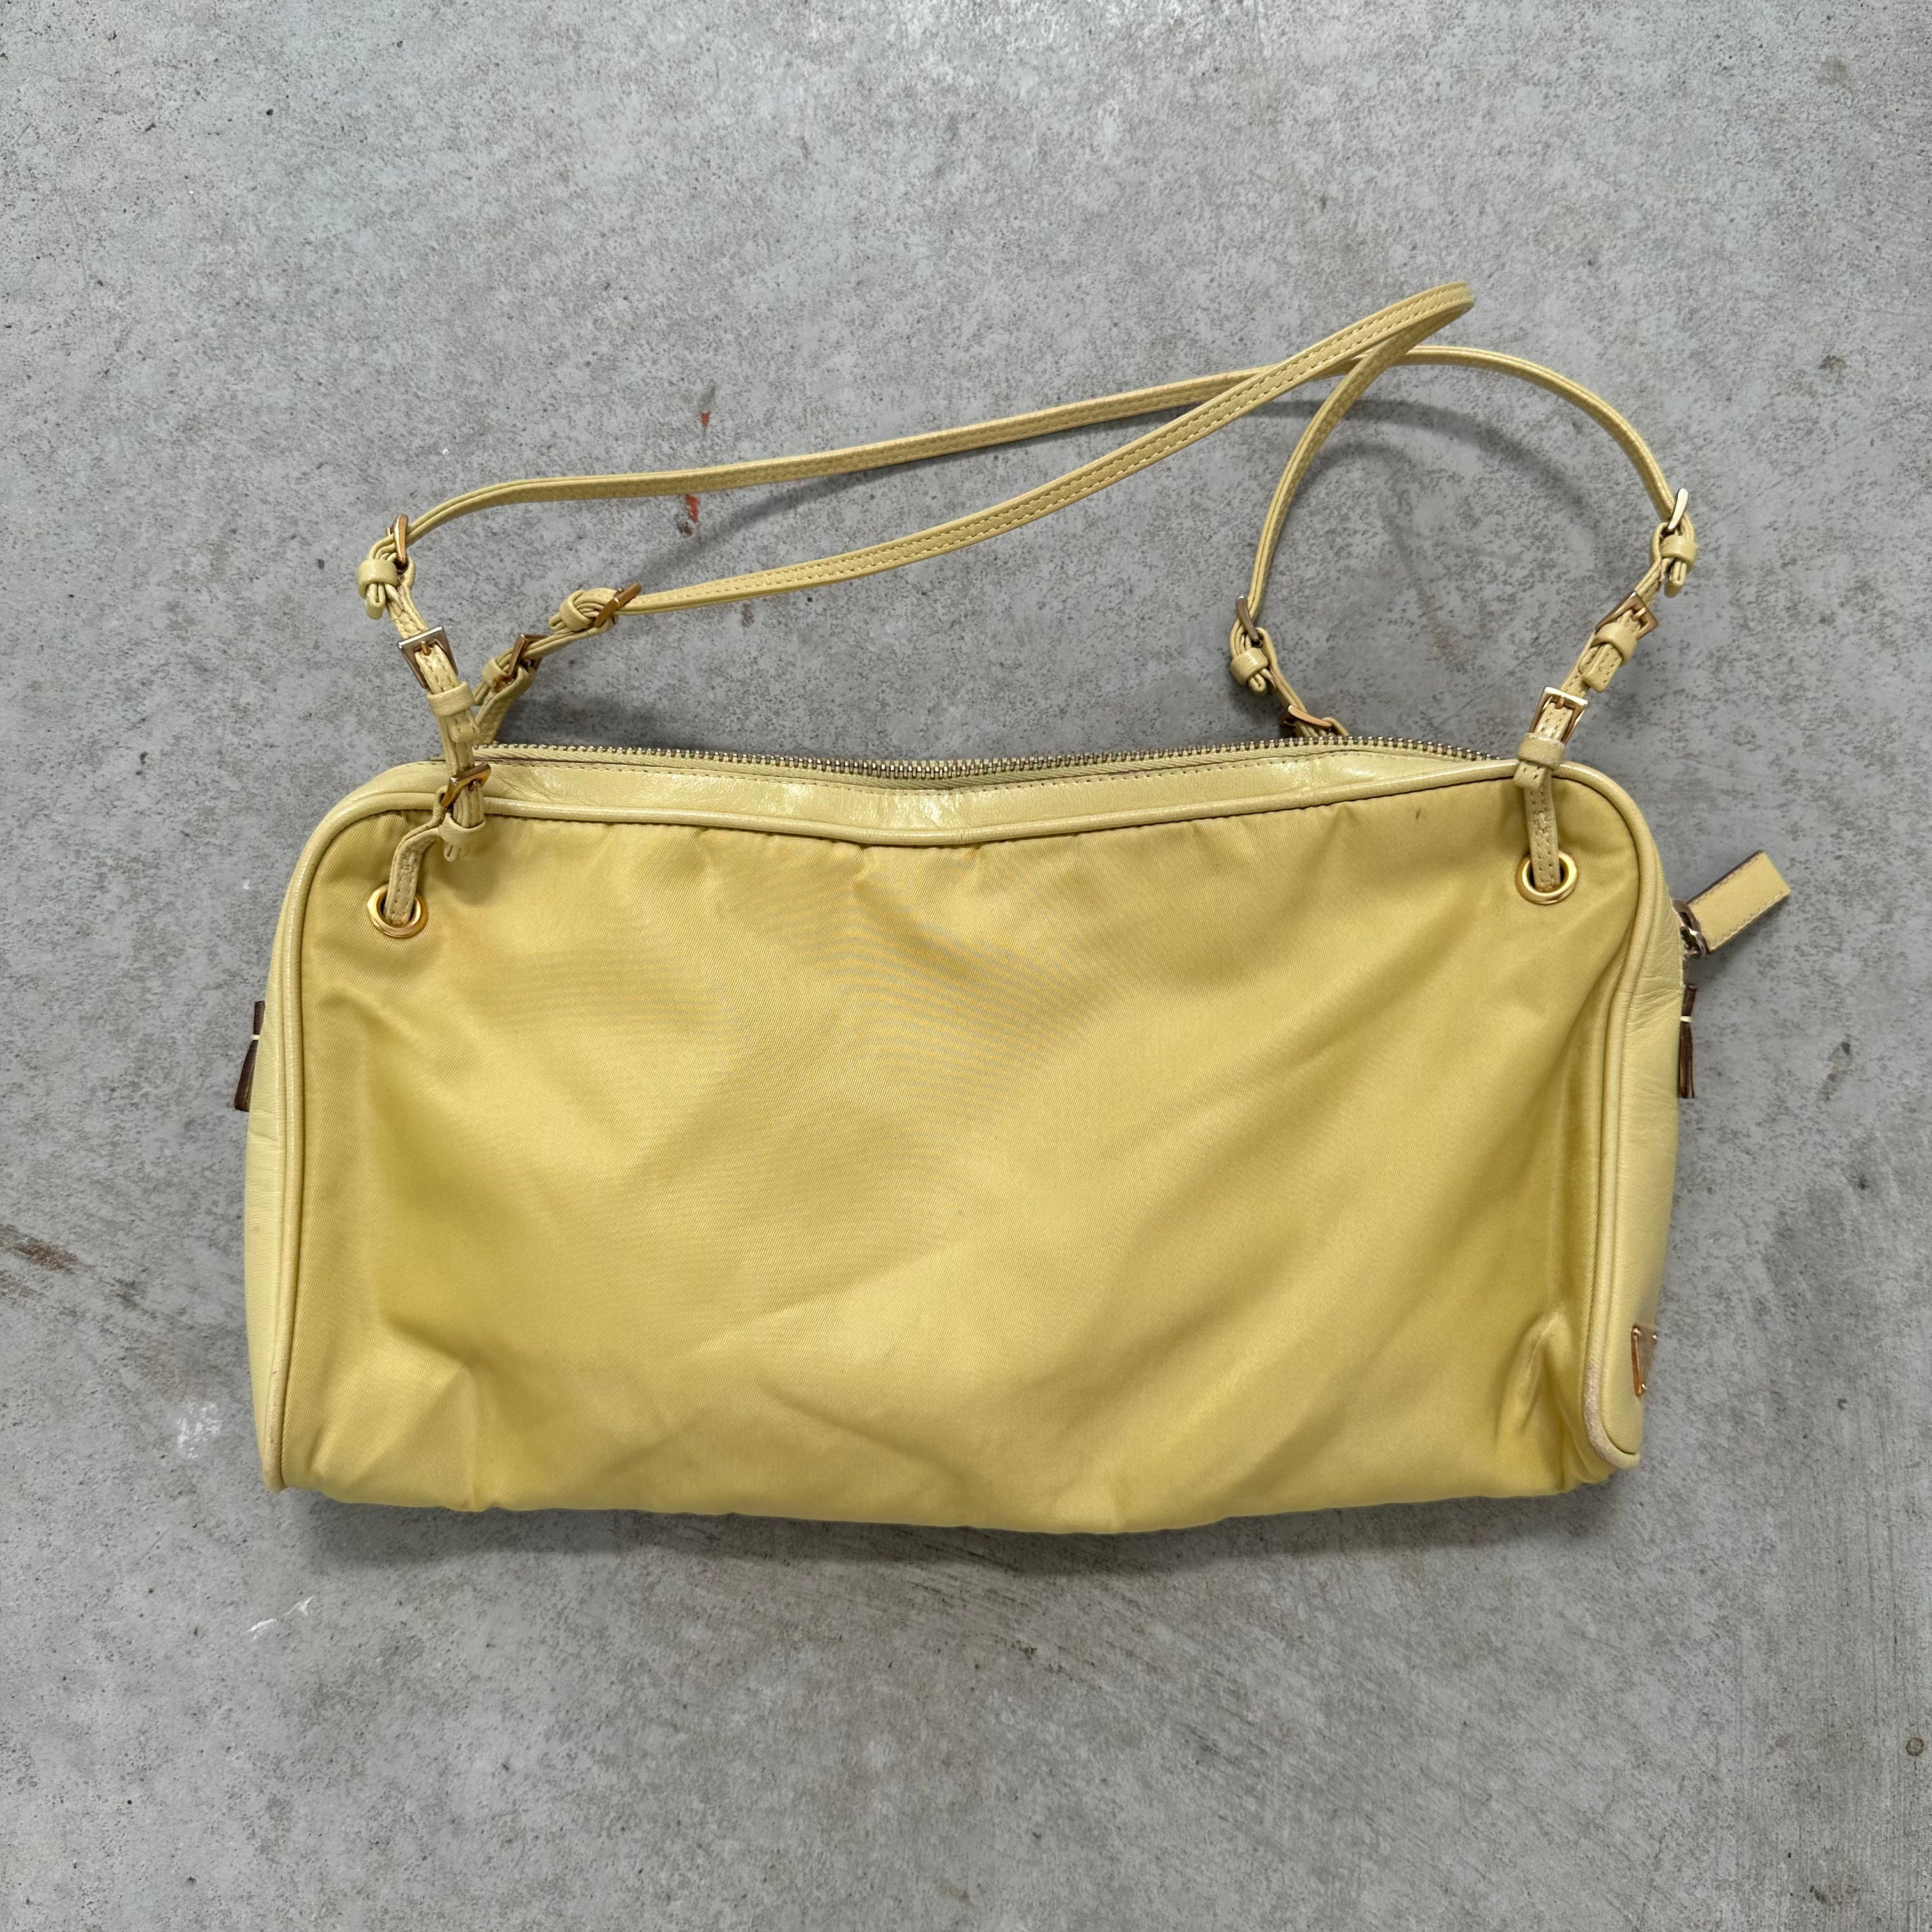 Prada Leather Strap Bag Nylon Yellow